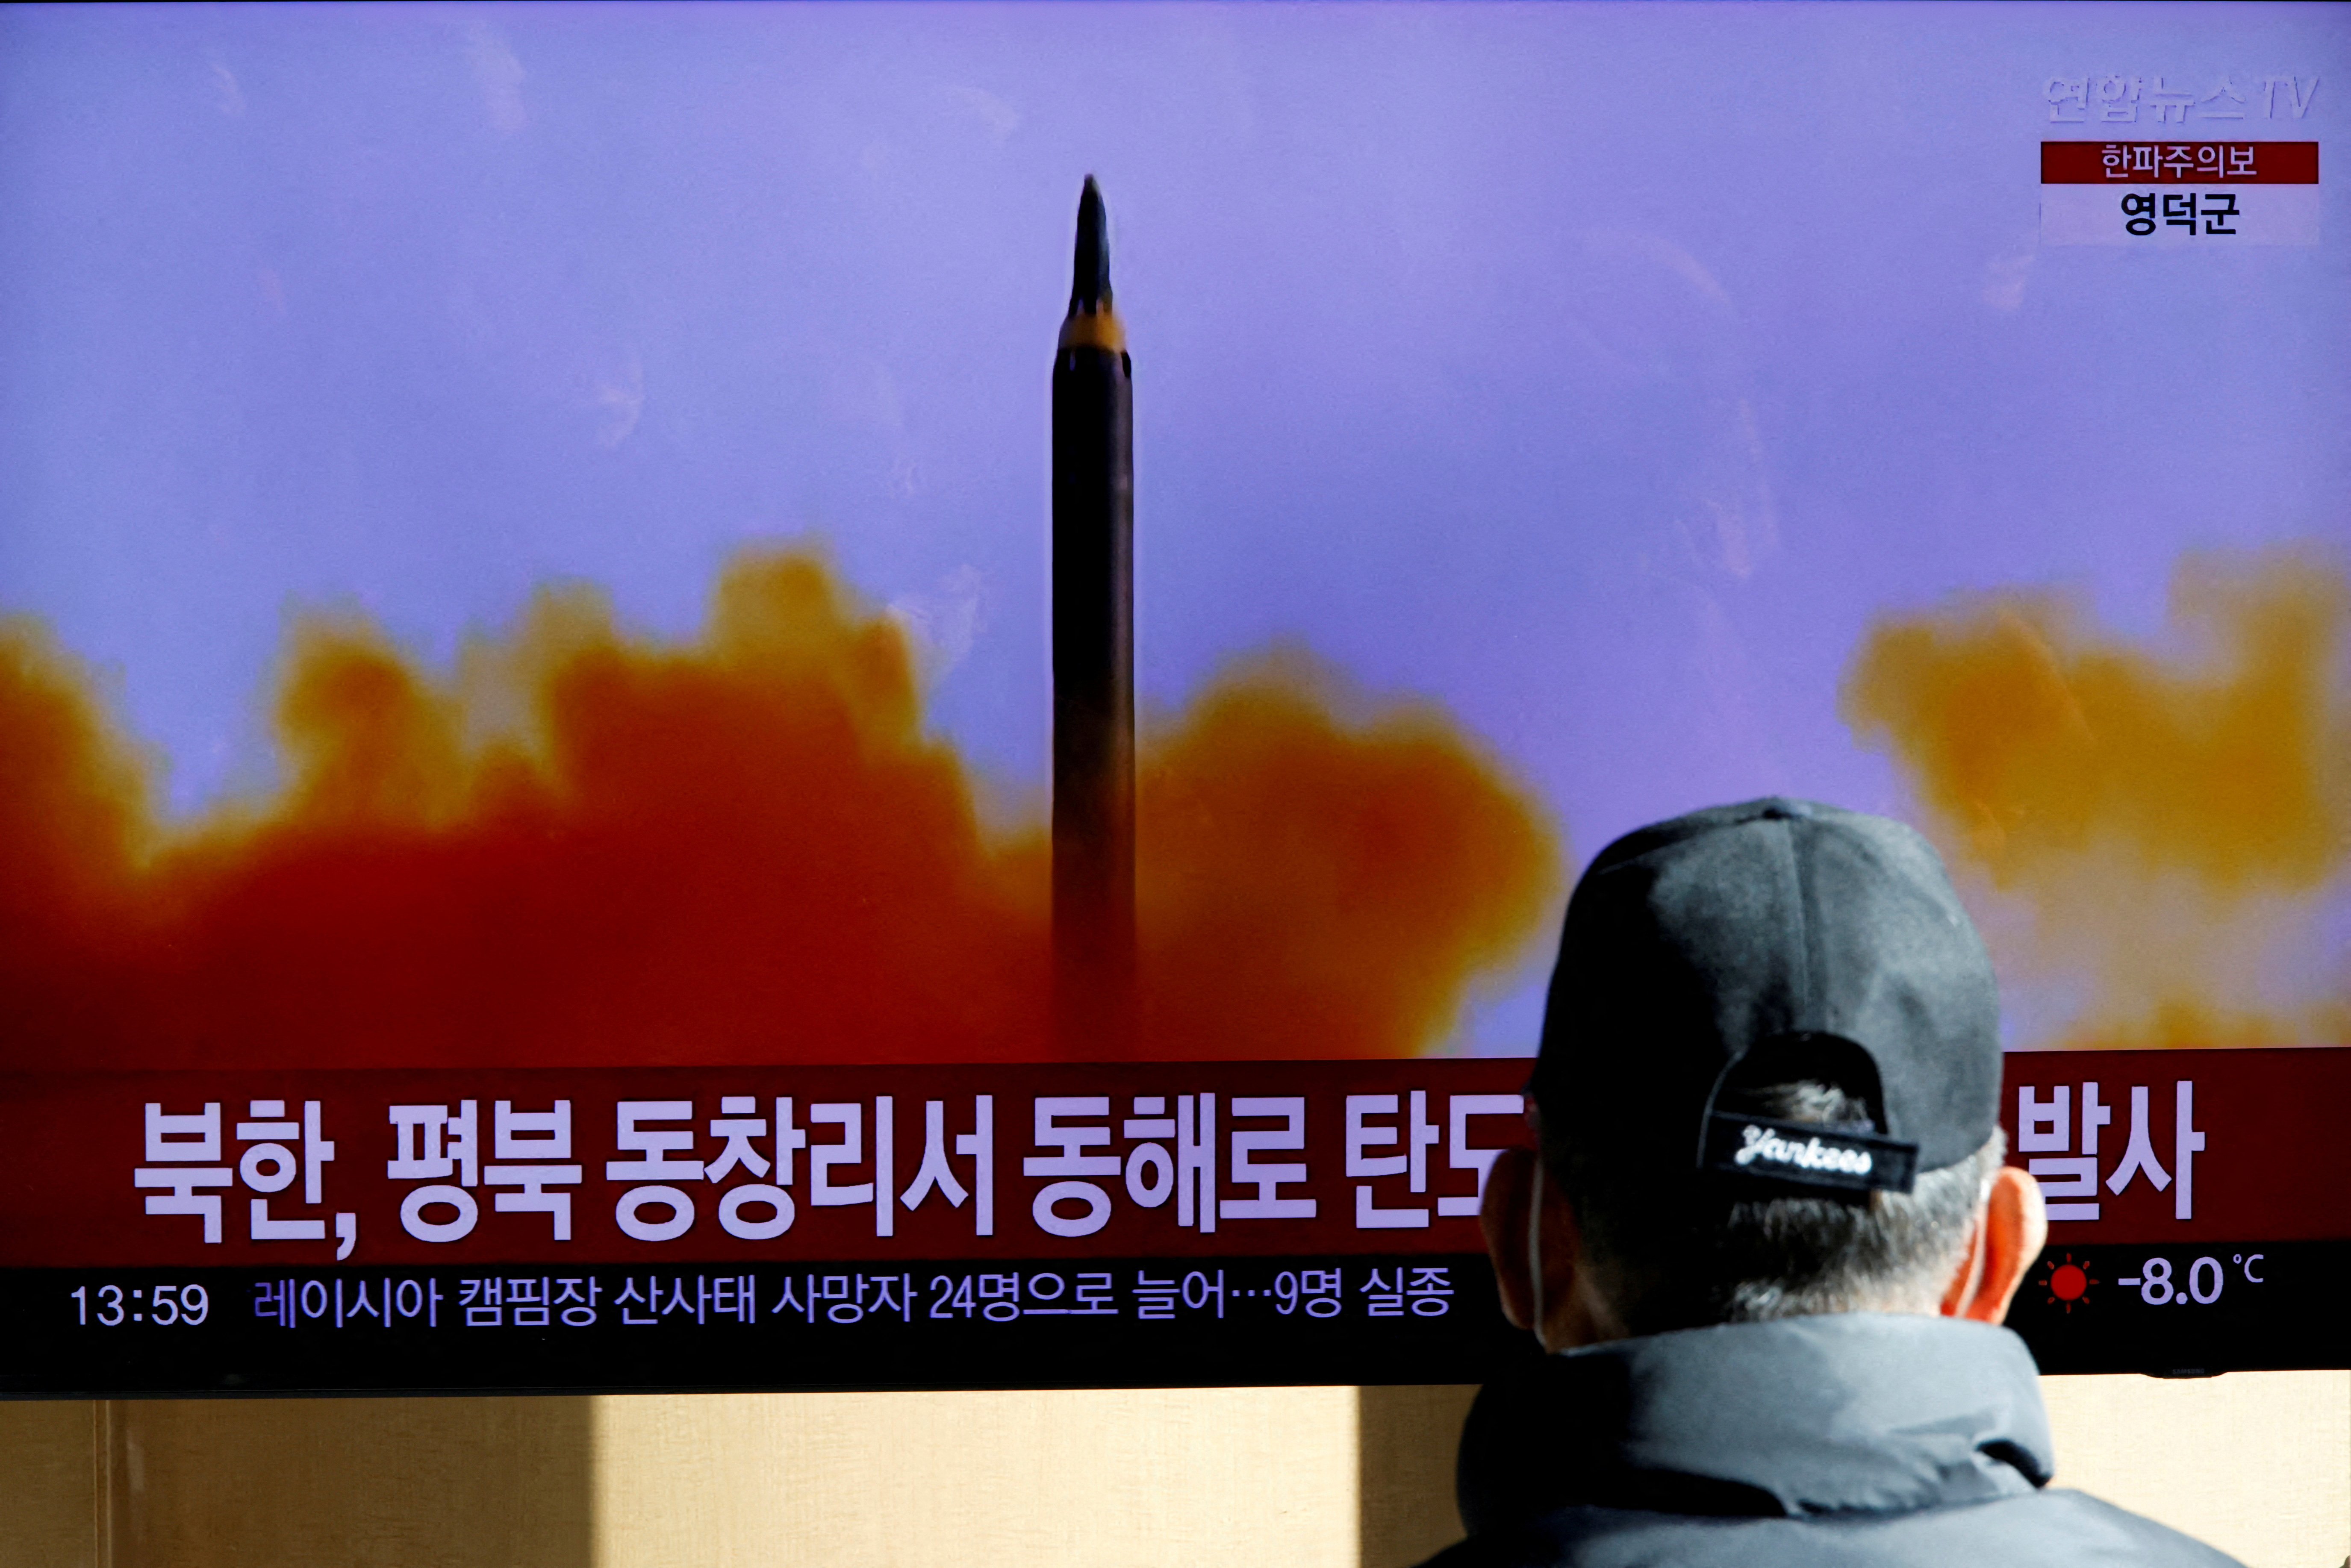 Algunos observadores dicen que los nuevos objetivos podrían estar relacionados con el impulso de Kim para expandir su arsenal nuclear y adquirir sistemas de armas de alta tecnología, como misiles de múltiples ojivas, un arma de largo alcance más ágil, un satélite espía y drones avanzados. REUTERS/ Heo Ran/File Photo